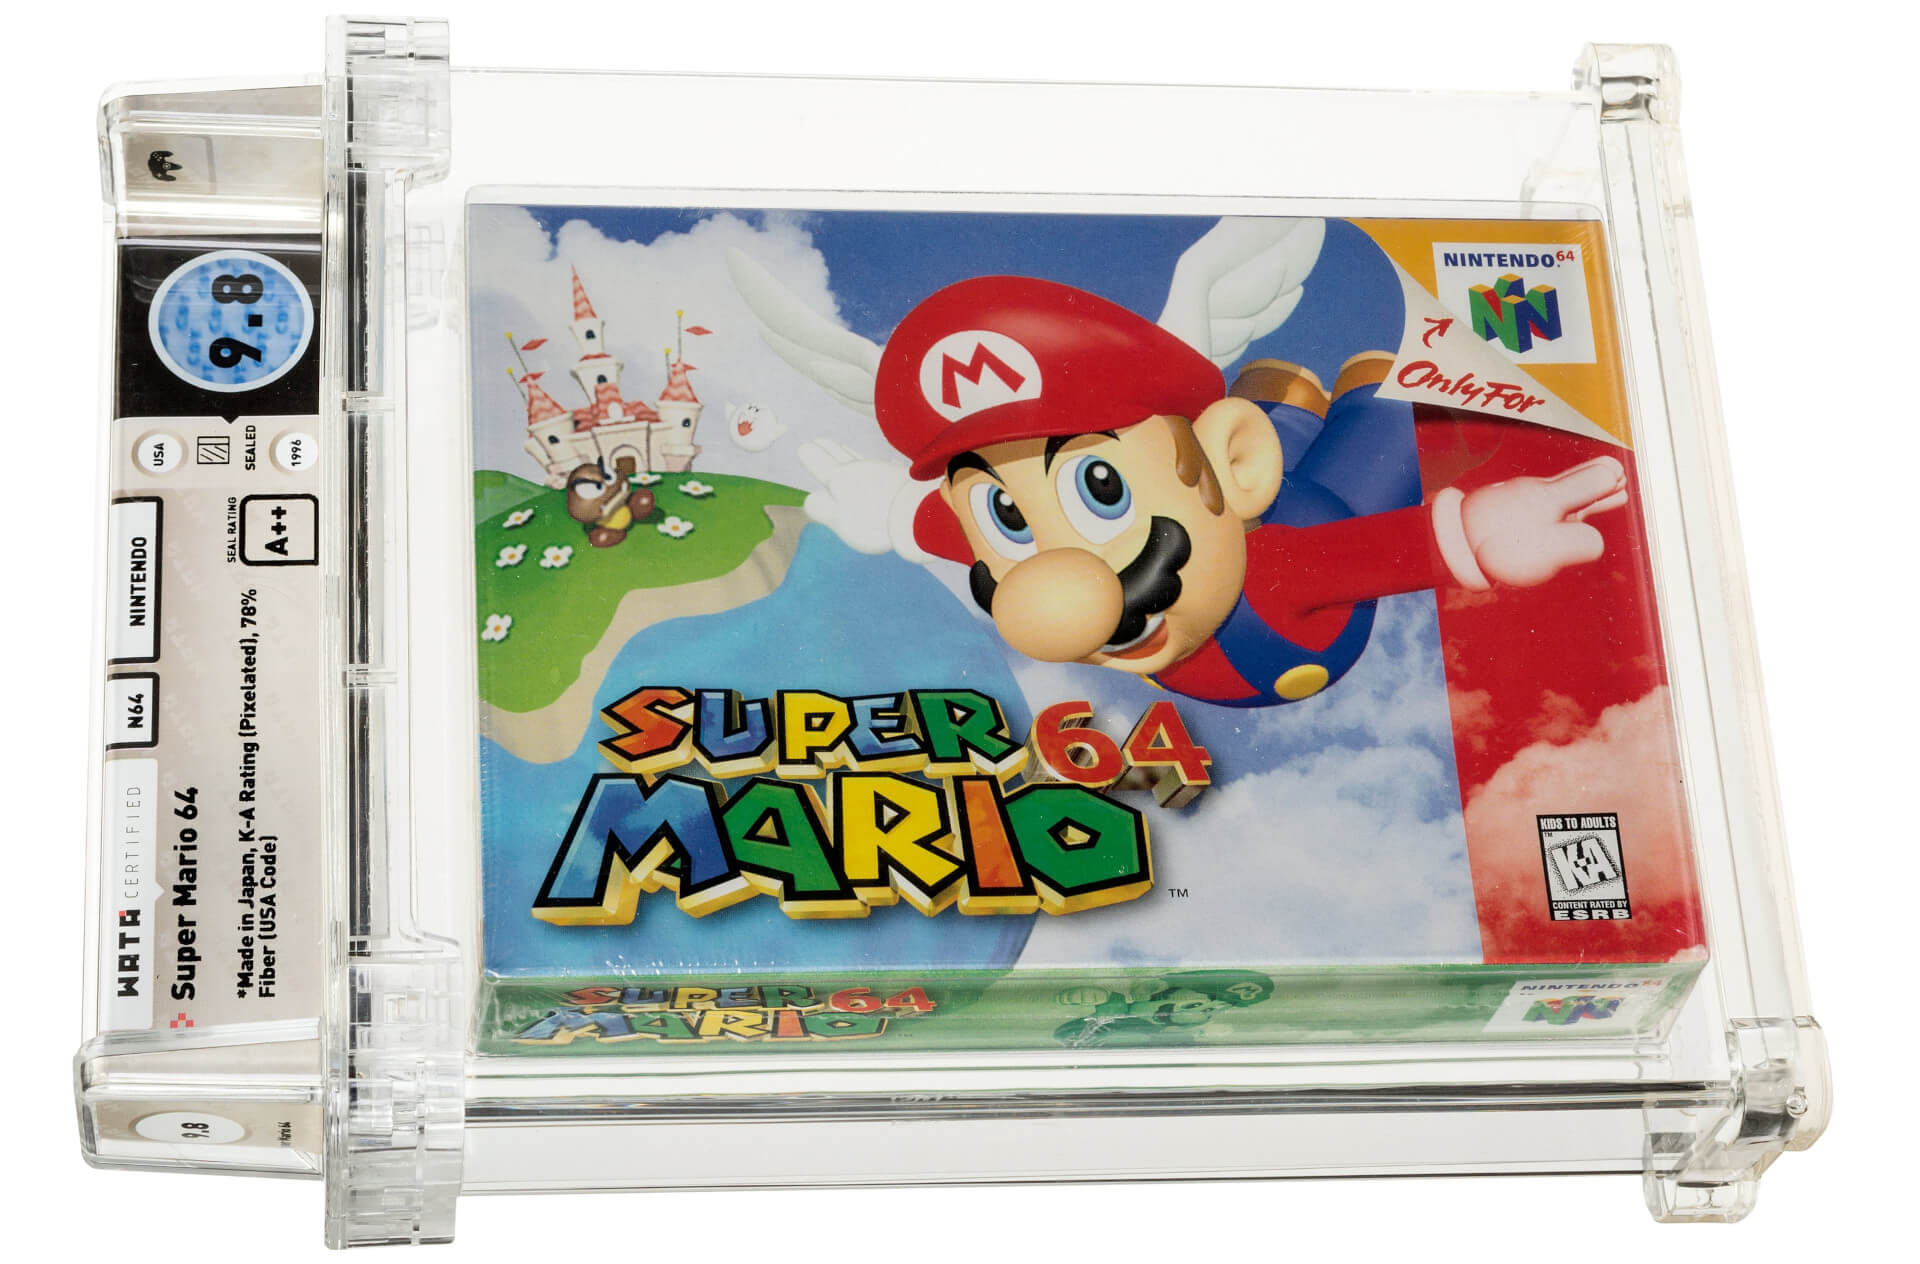 Cartucho lacrado de Super Mario 64 é leiloado por US$ 1,56 milhão